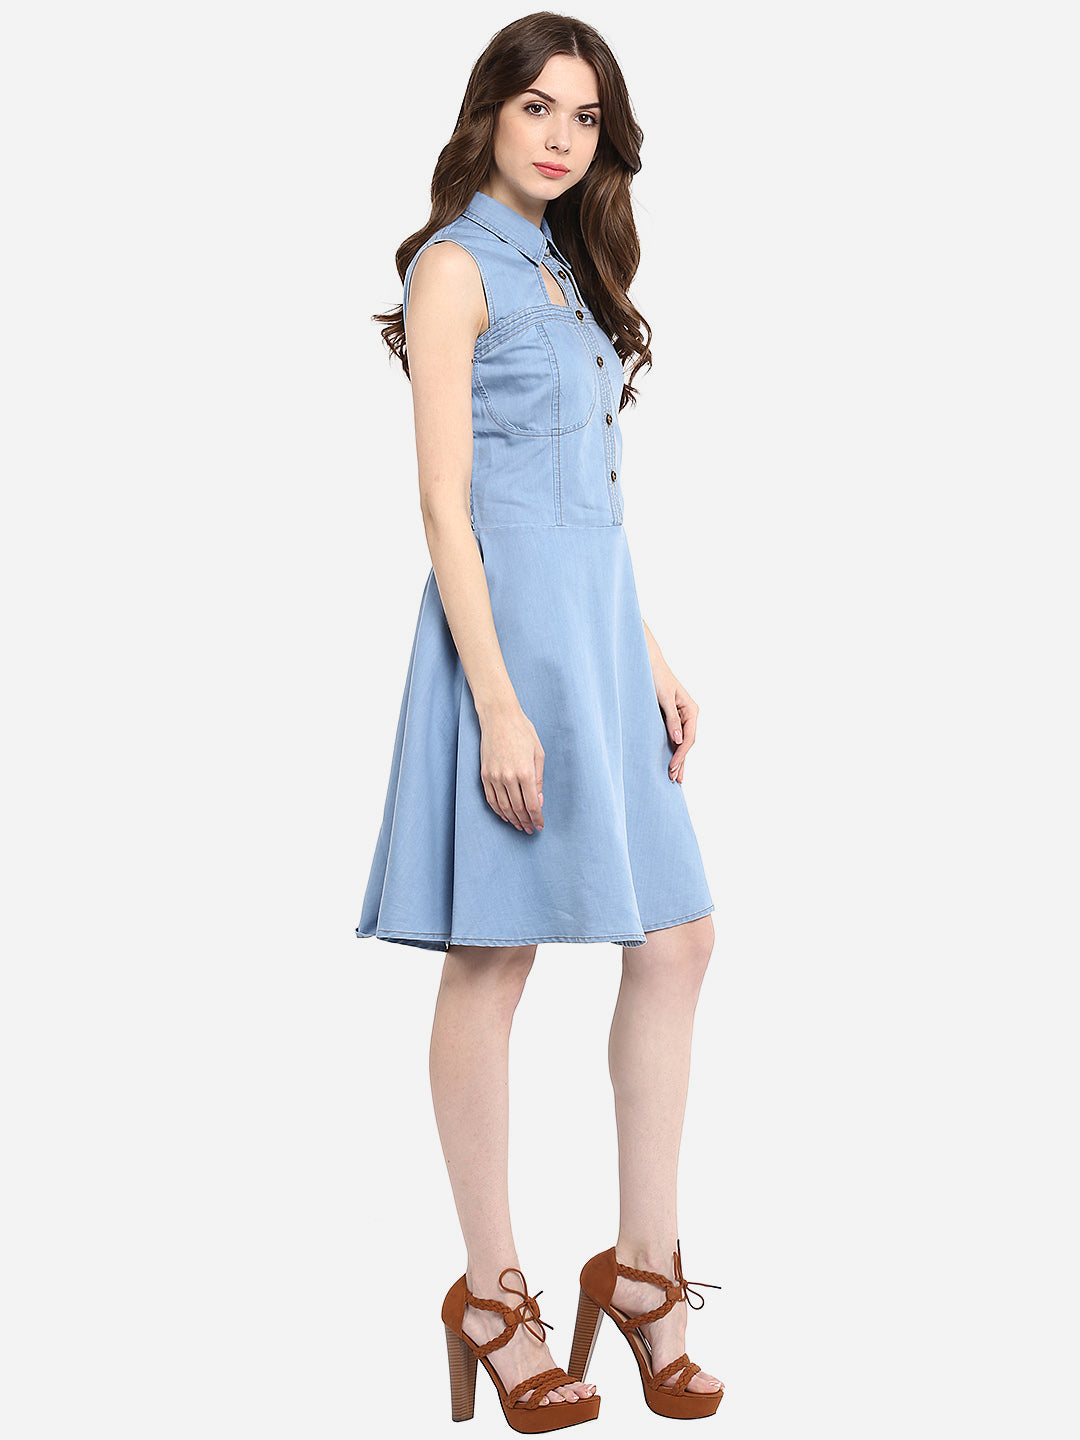 Women's Light Blue Denim Dress with Neck cutout